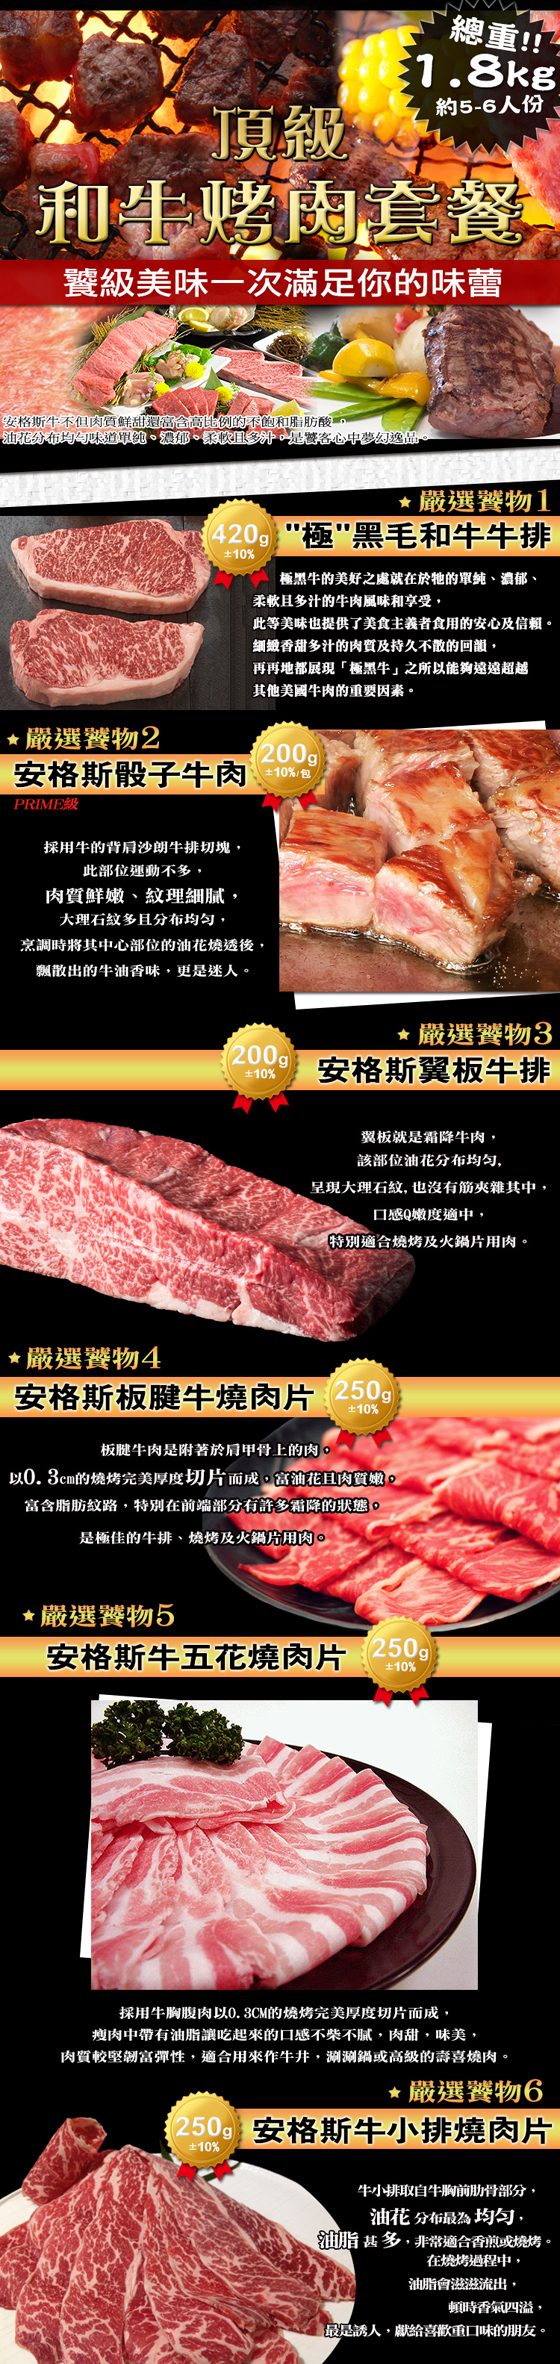 極鮮配/頂級和牛烤肉套餐(中秋限定版)/和牛烤肉套餐/和牛/牛肉/牛排/燒烤牛肉片/燒肉片/烤肉套餐